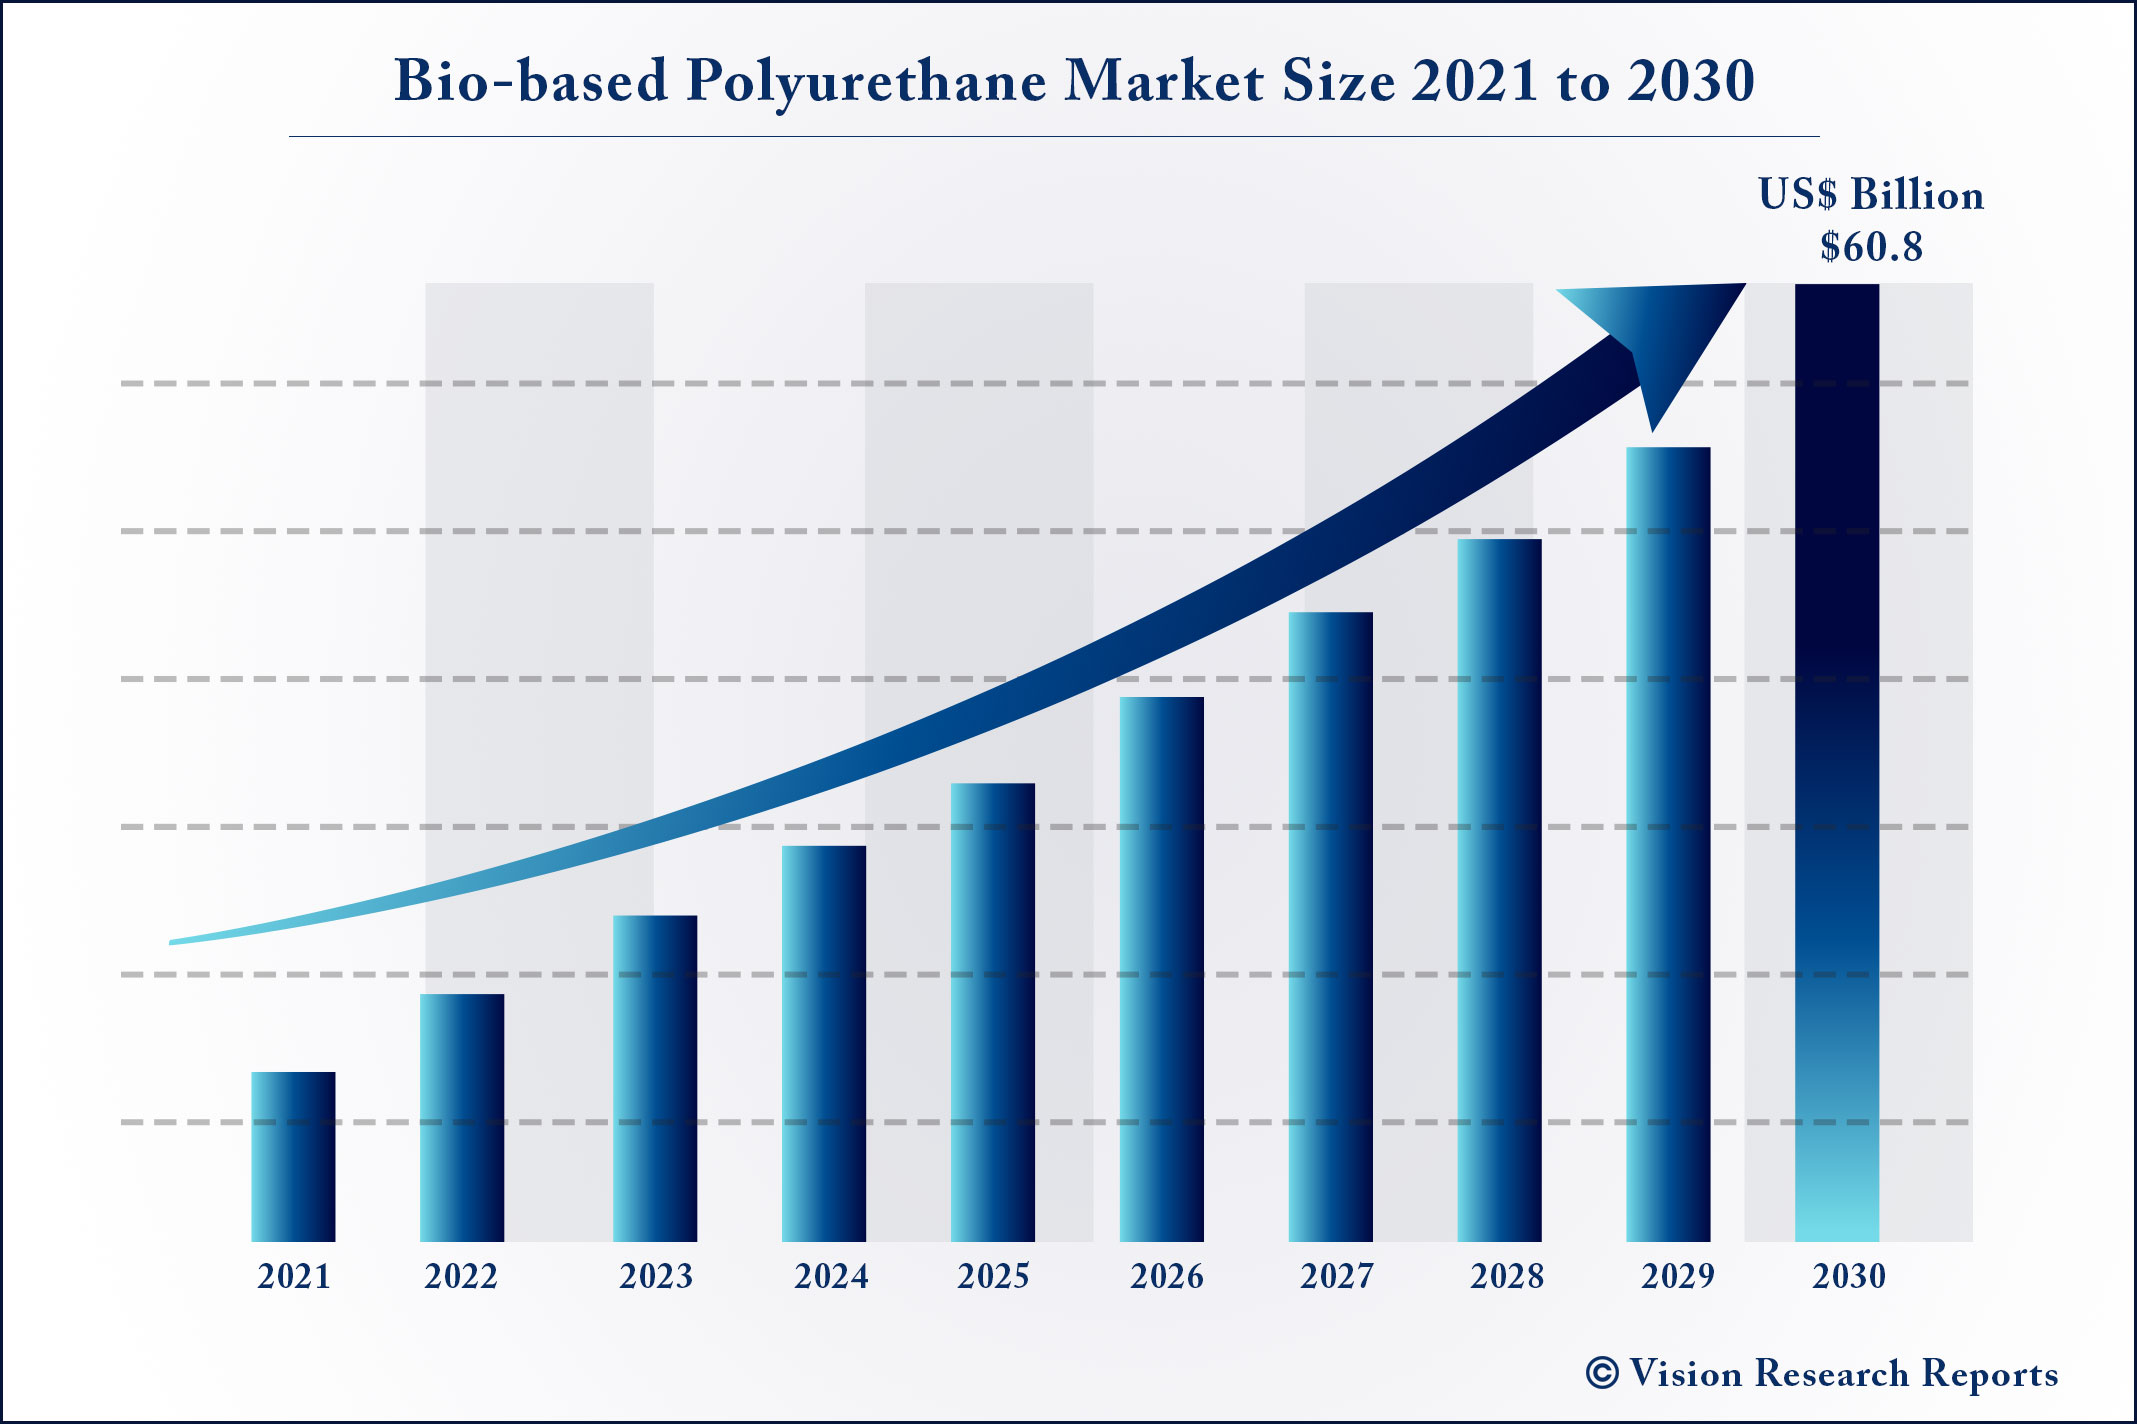 Bio-based Polyurethane Market Size 2021 to 2030